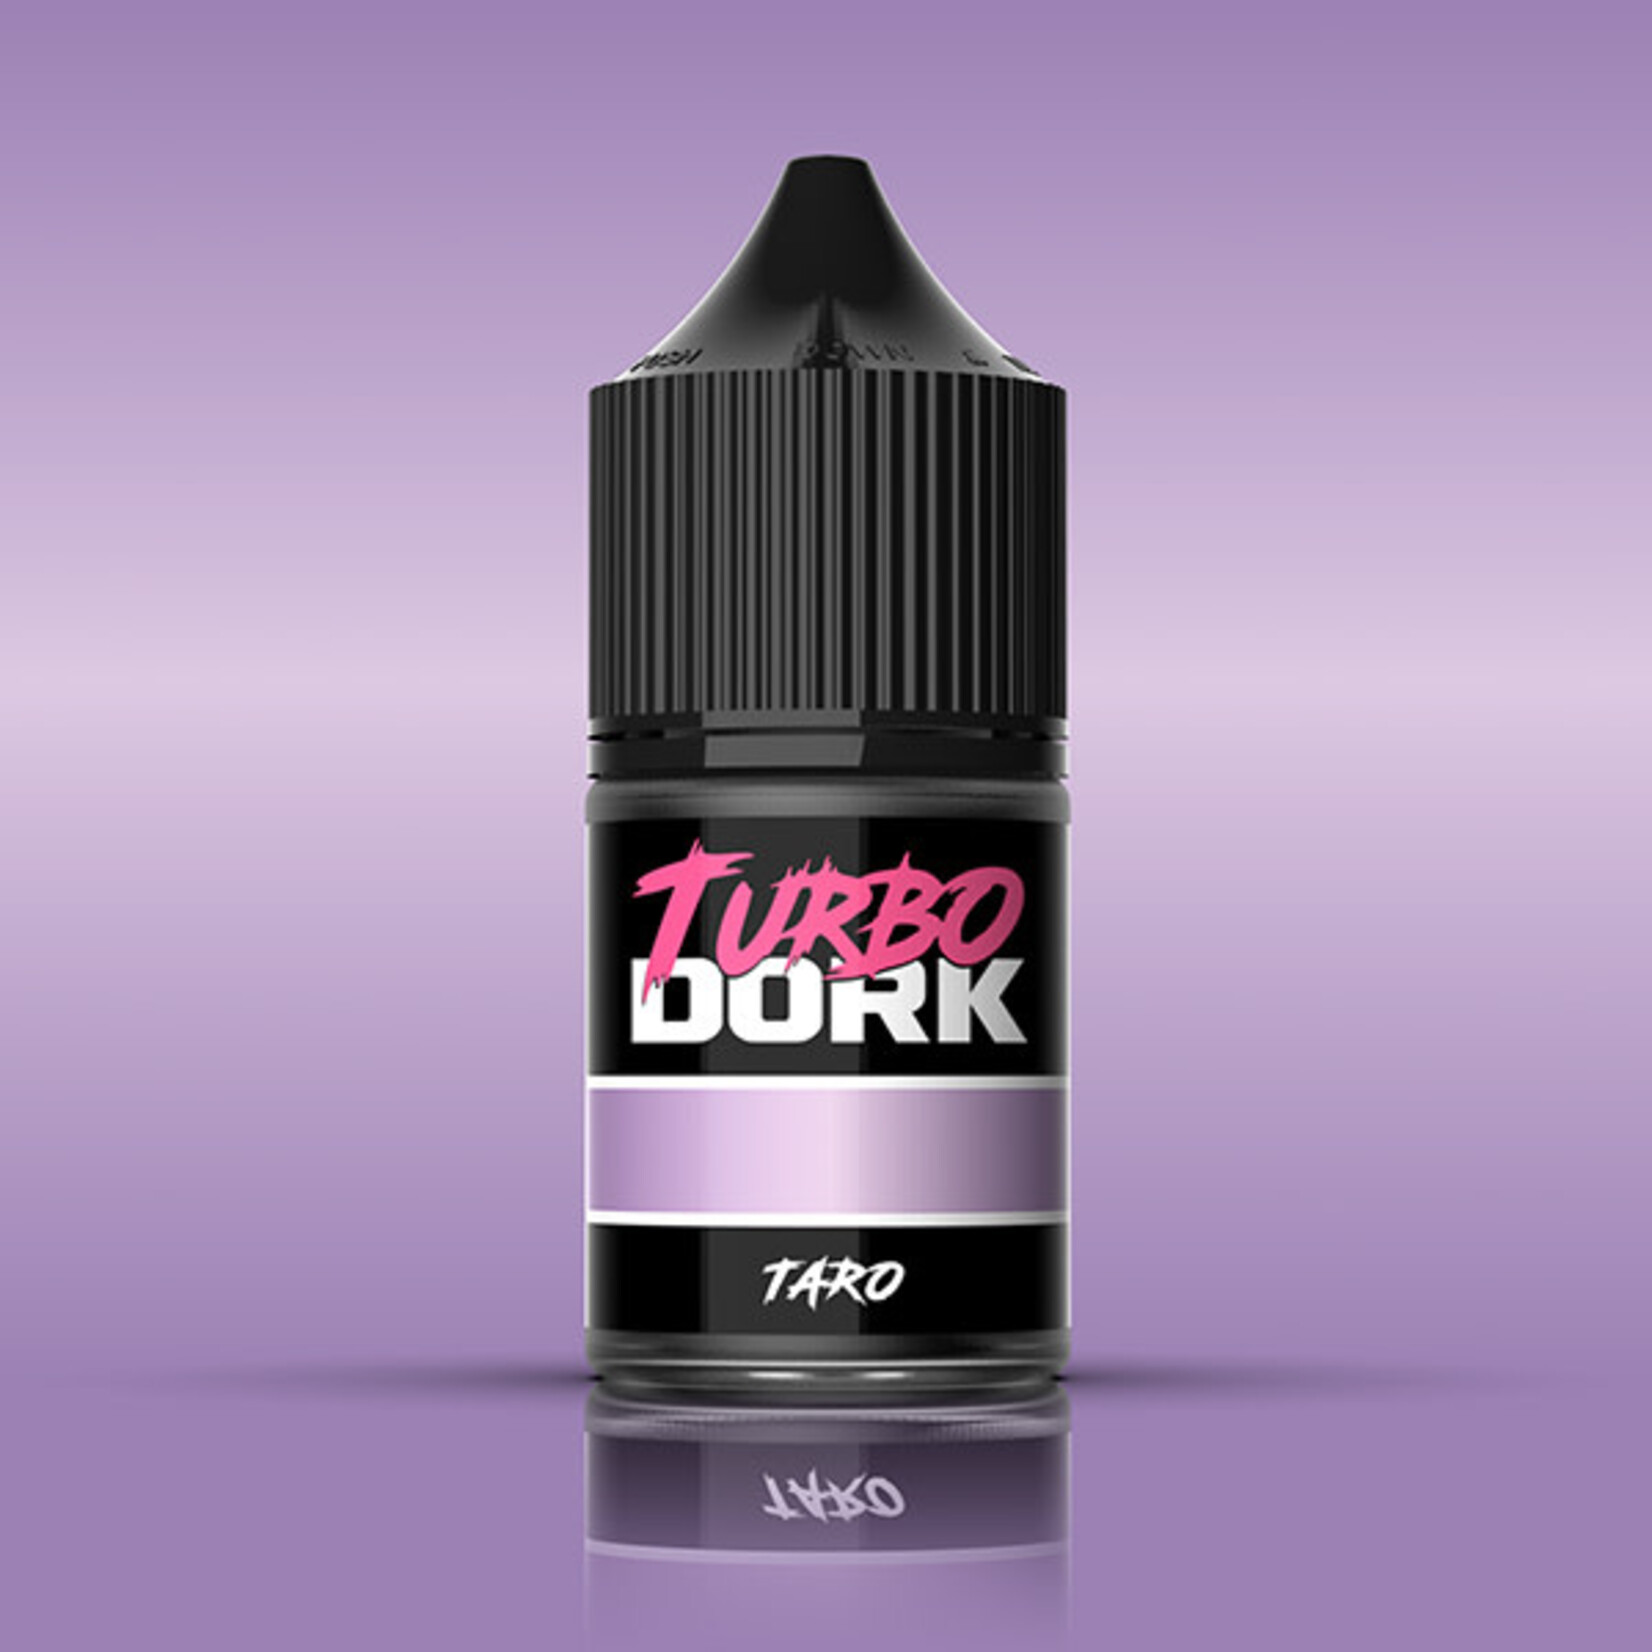 Turbo Dork Metallic Acrylic Paint - Taro